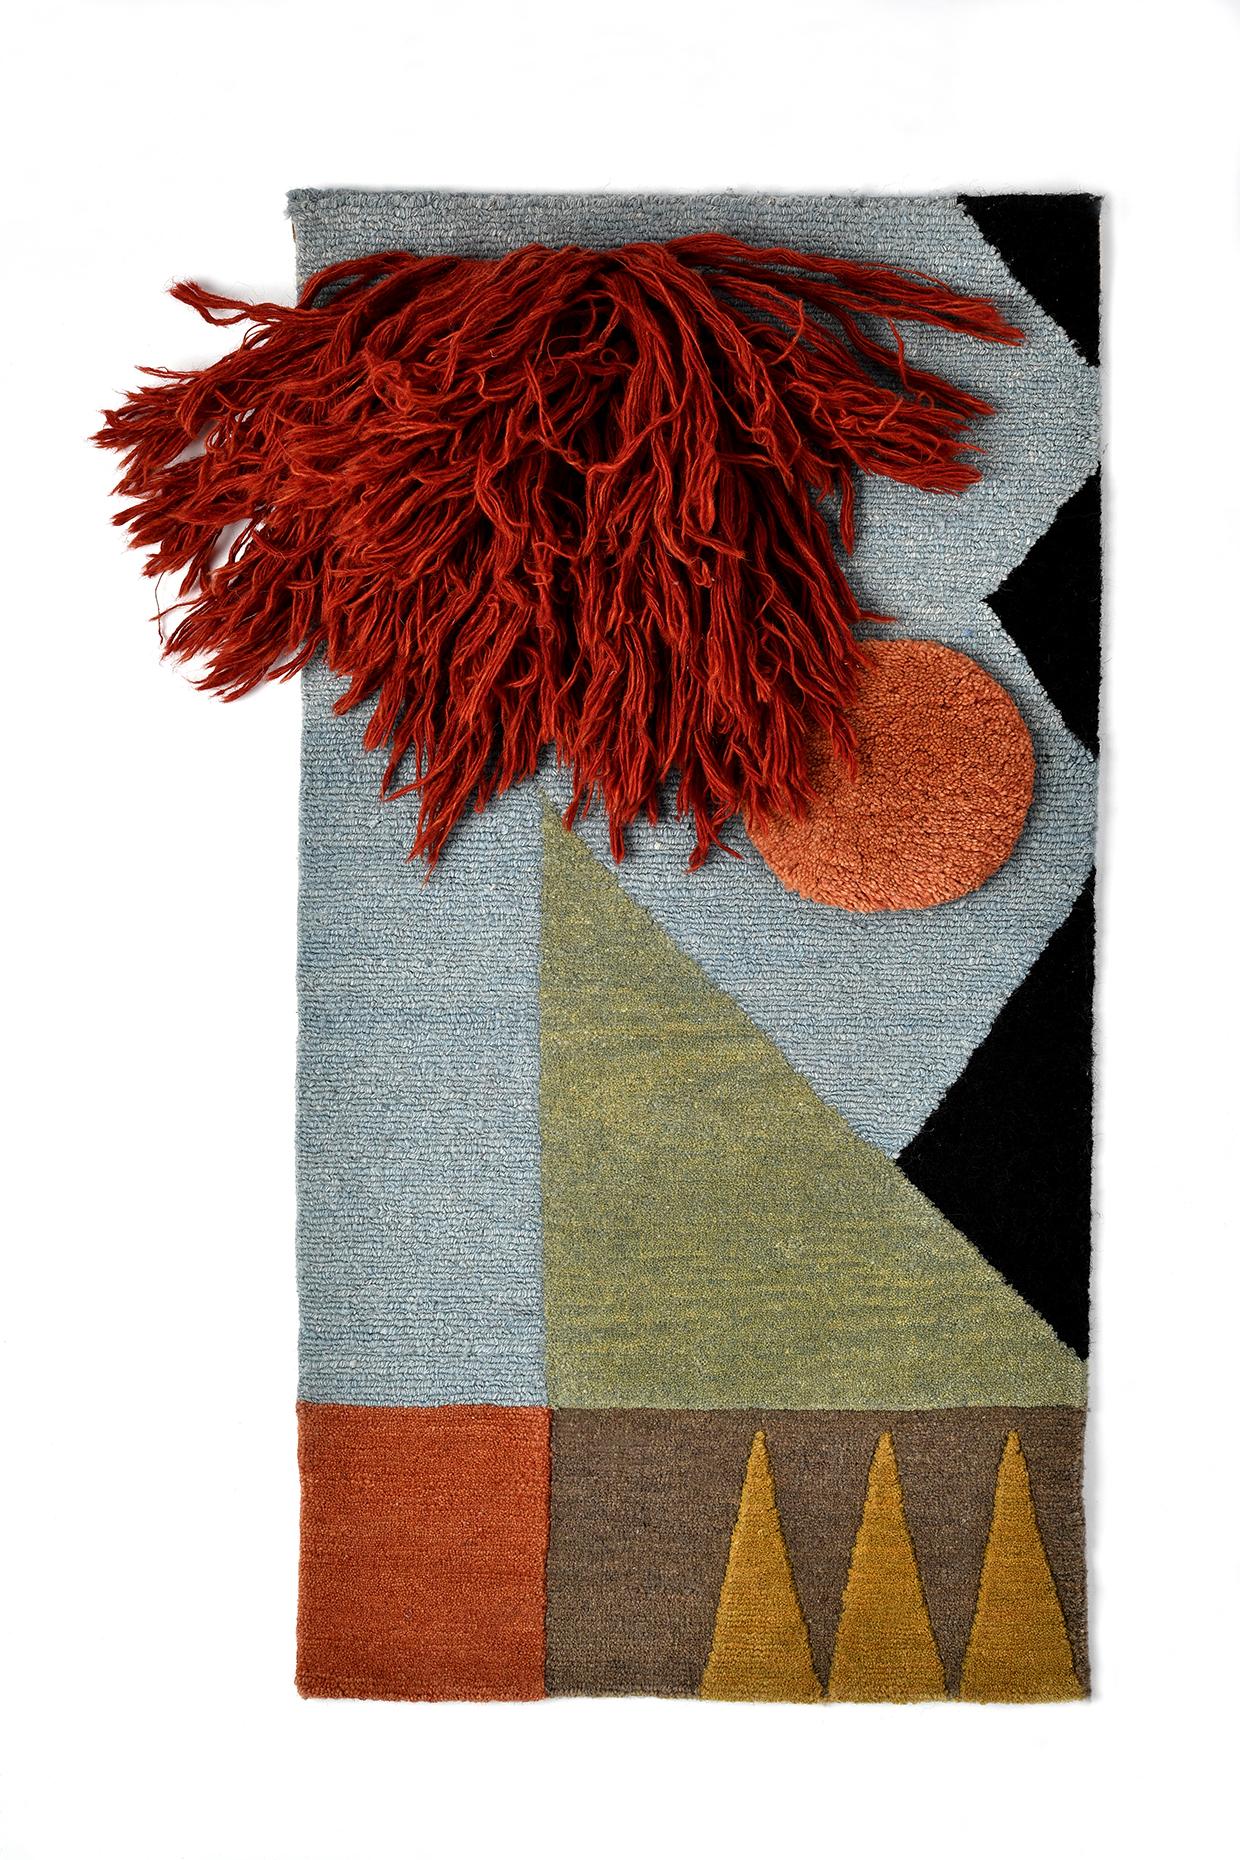 Nr. 221 Handgeknüpftes Textilposter von Lyk Carpet
Hommage an die Bauhausfrauen
Abmessungen: B 42 x L 82 cm.
MATERIALIEN: 100% tibetische Hochlandwolle, handgekämmte und handgesponnene Schurwolle, natürliche pflanzengefärbte Wolle, 100 Knoten pro